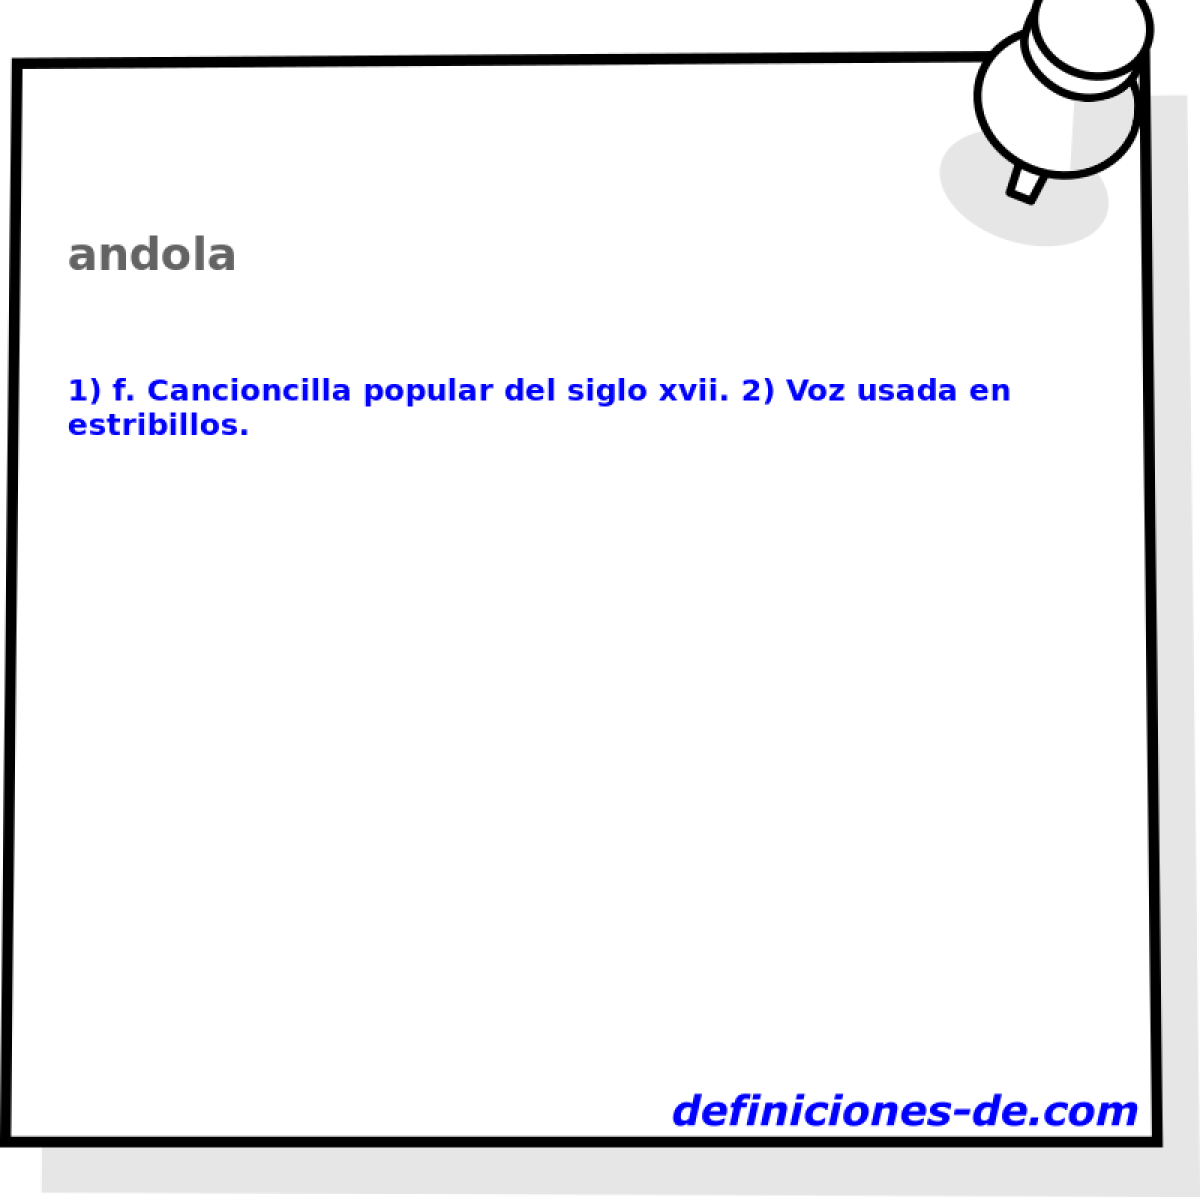 andola 